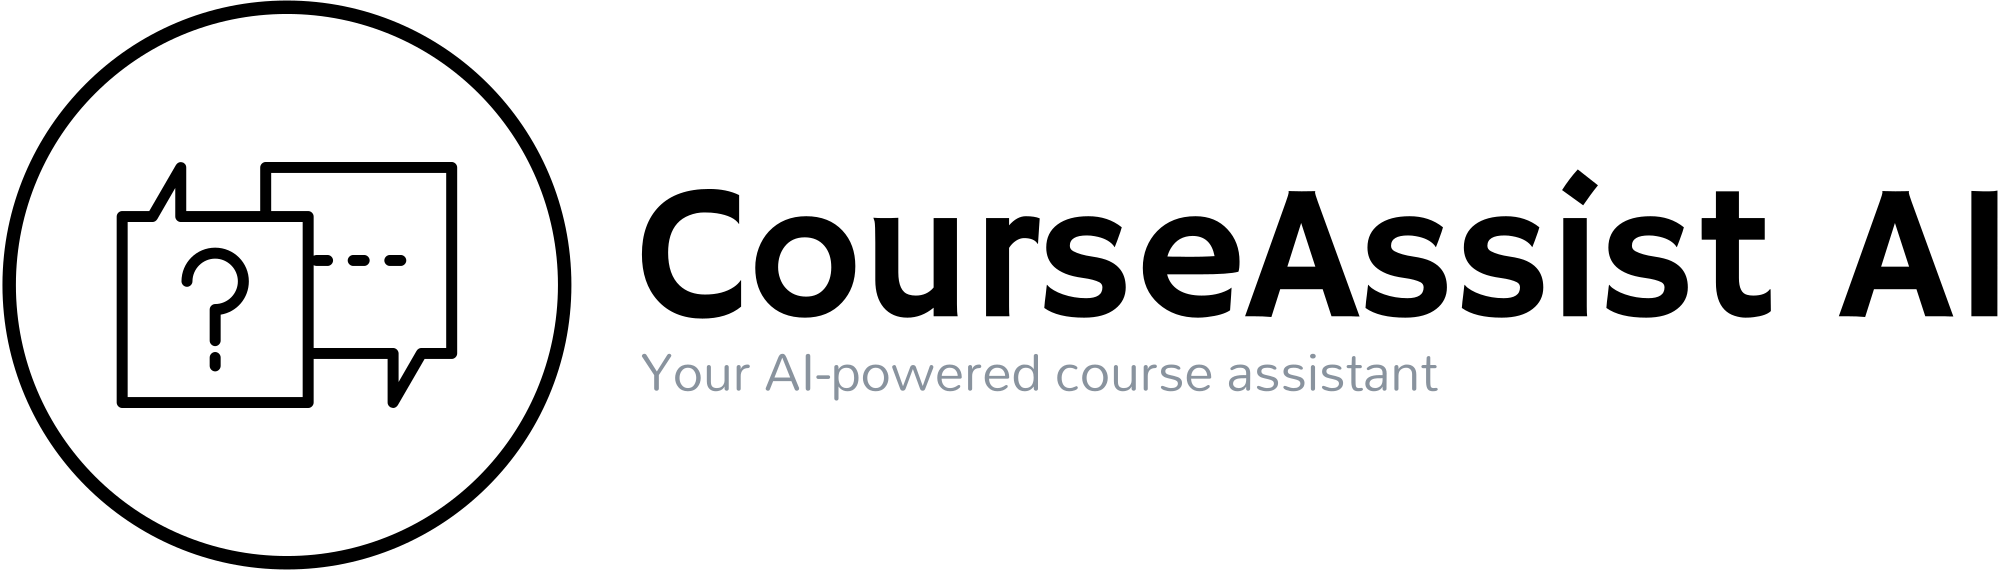 CourseAssist AI